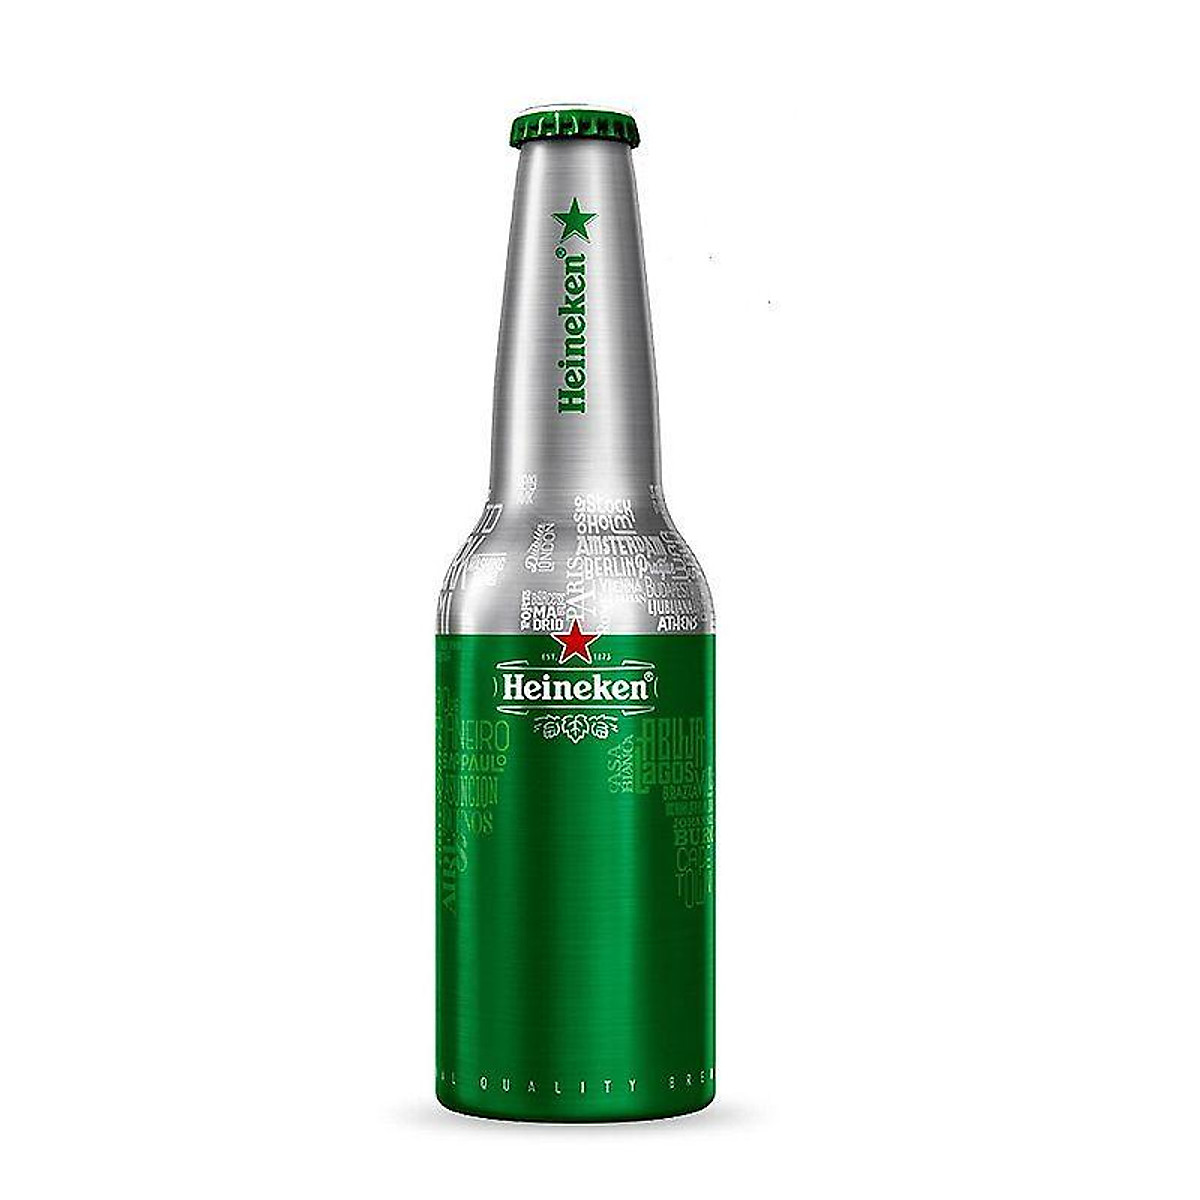 Khám phá Heineken bao bì với mới “Xanh hơn, đẳng cấp hơn”